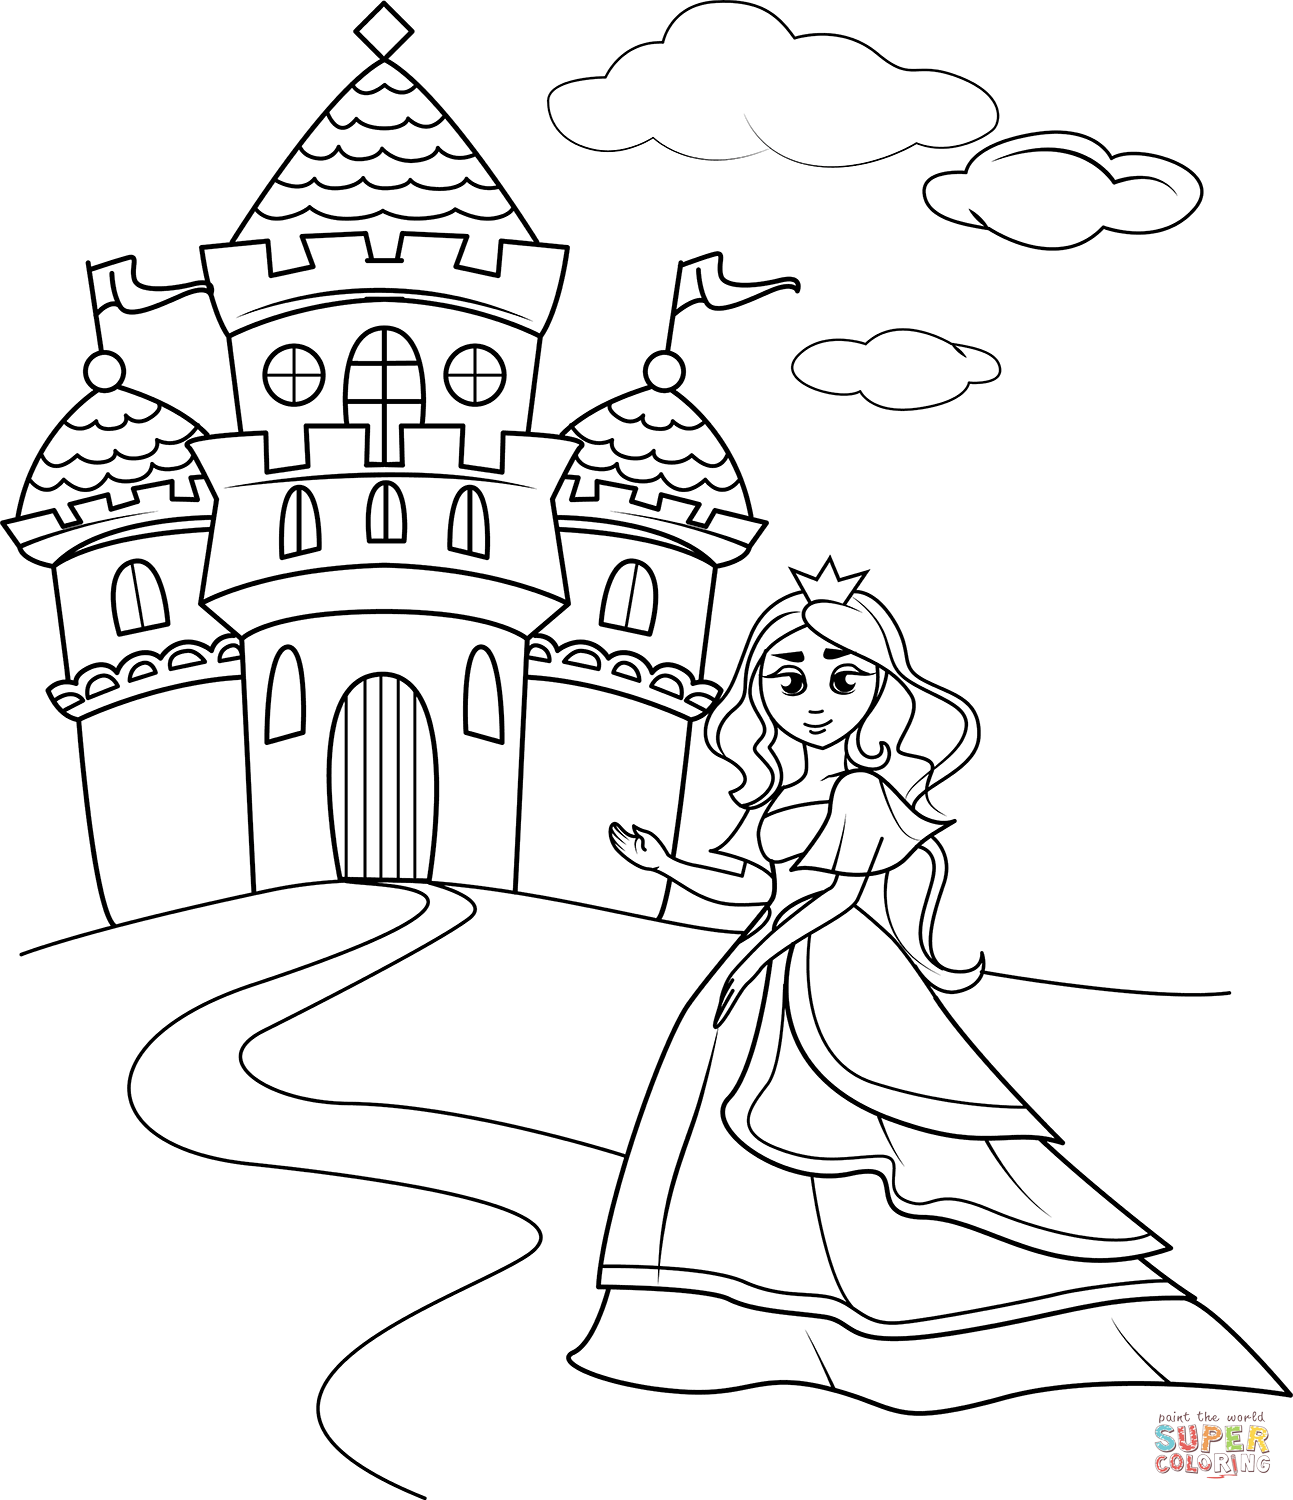 Dibujo de castillo de la princesa para colorear dibujos para colorear imprimir gratis